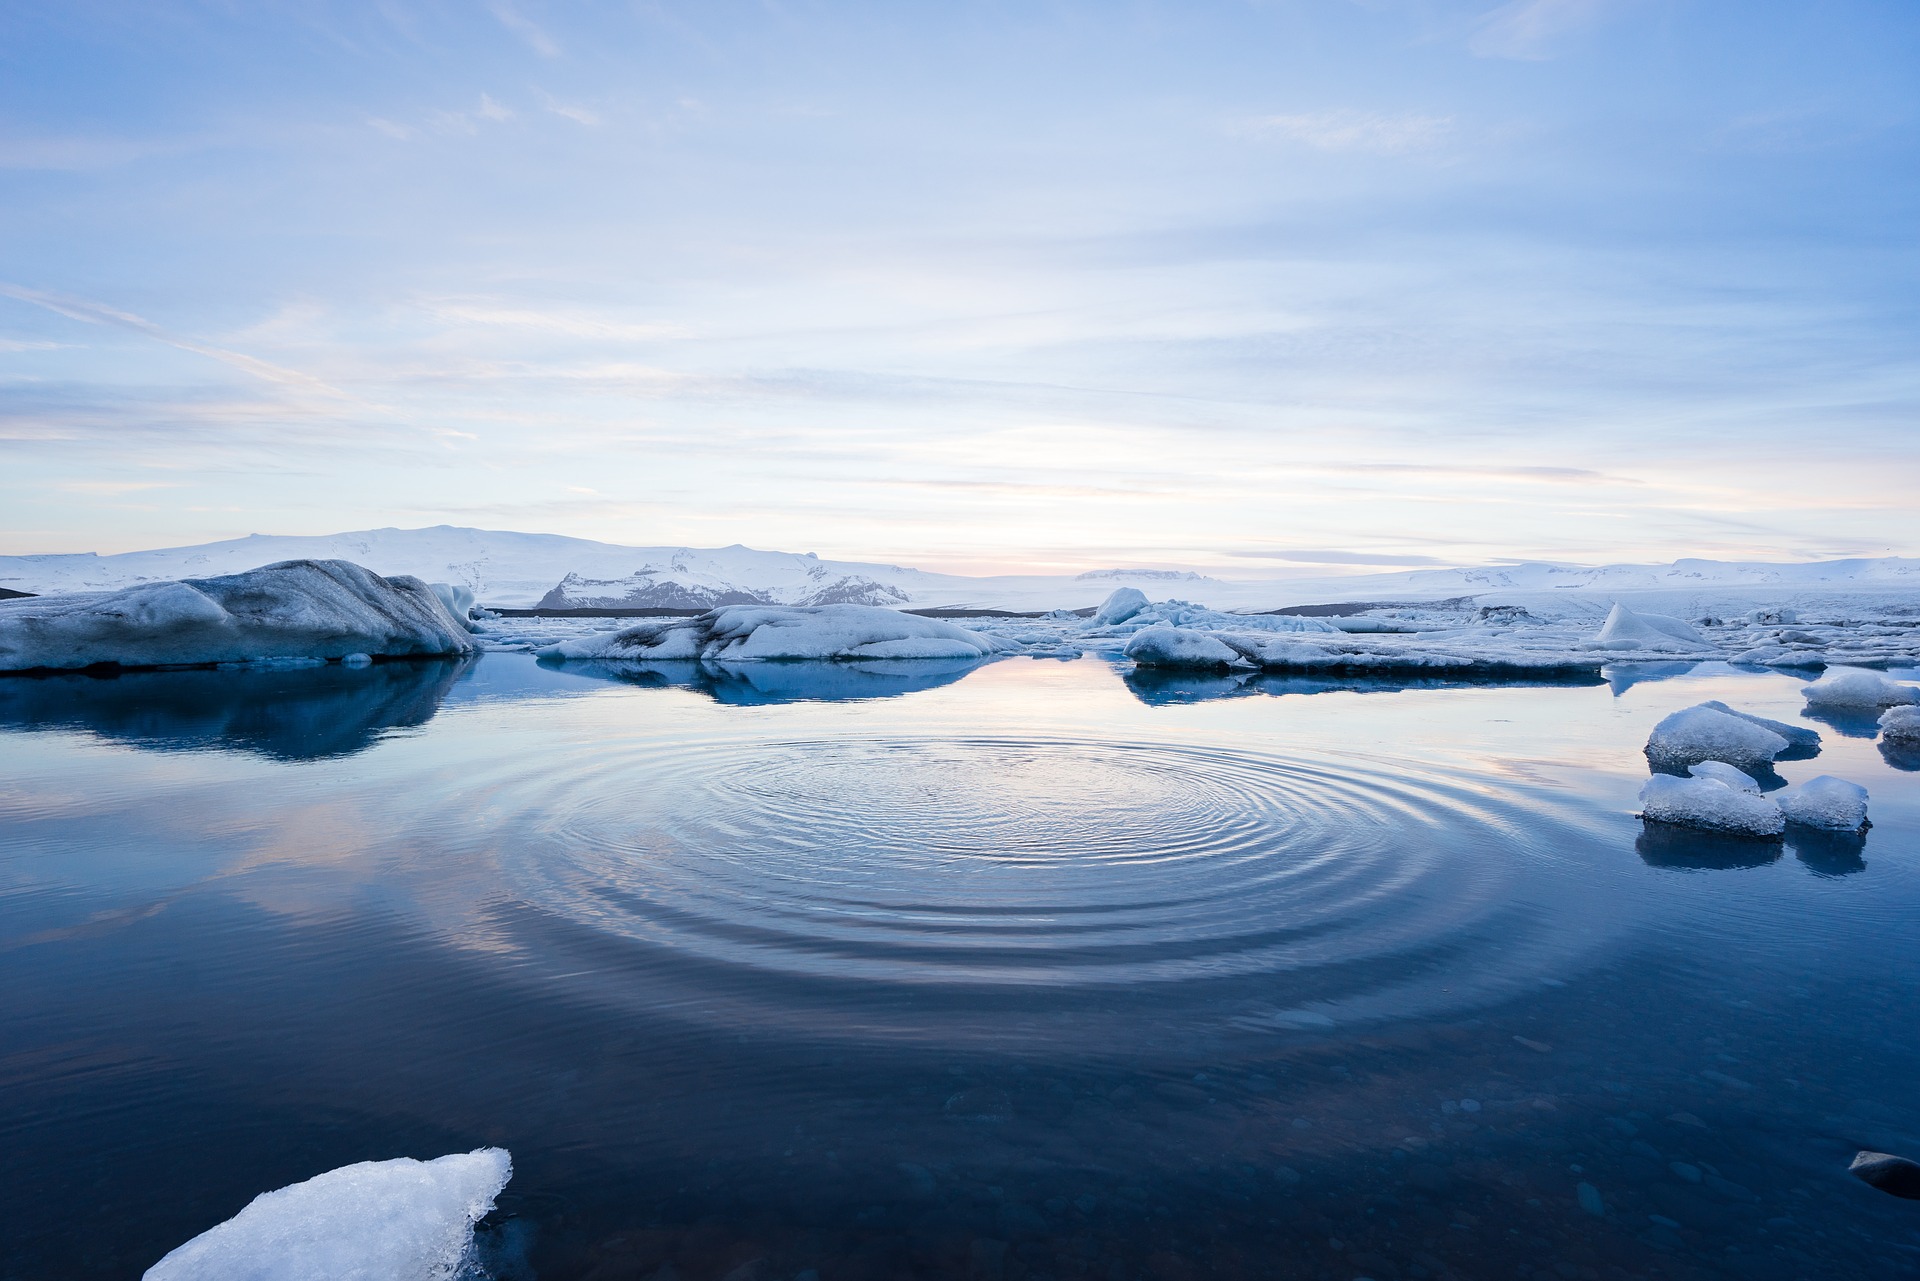 Ein paar kleine Eisschollen schwimmen im Wasser, im Hintergrund sieht man das Festland der Arktis